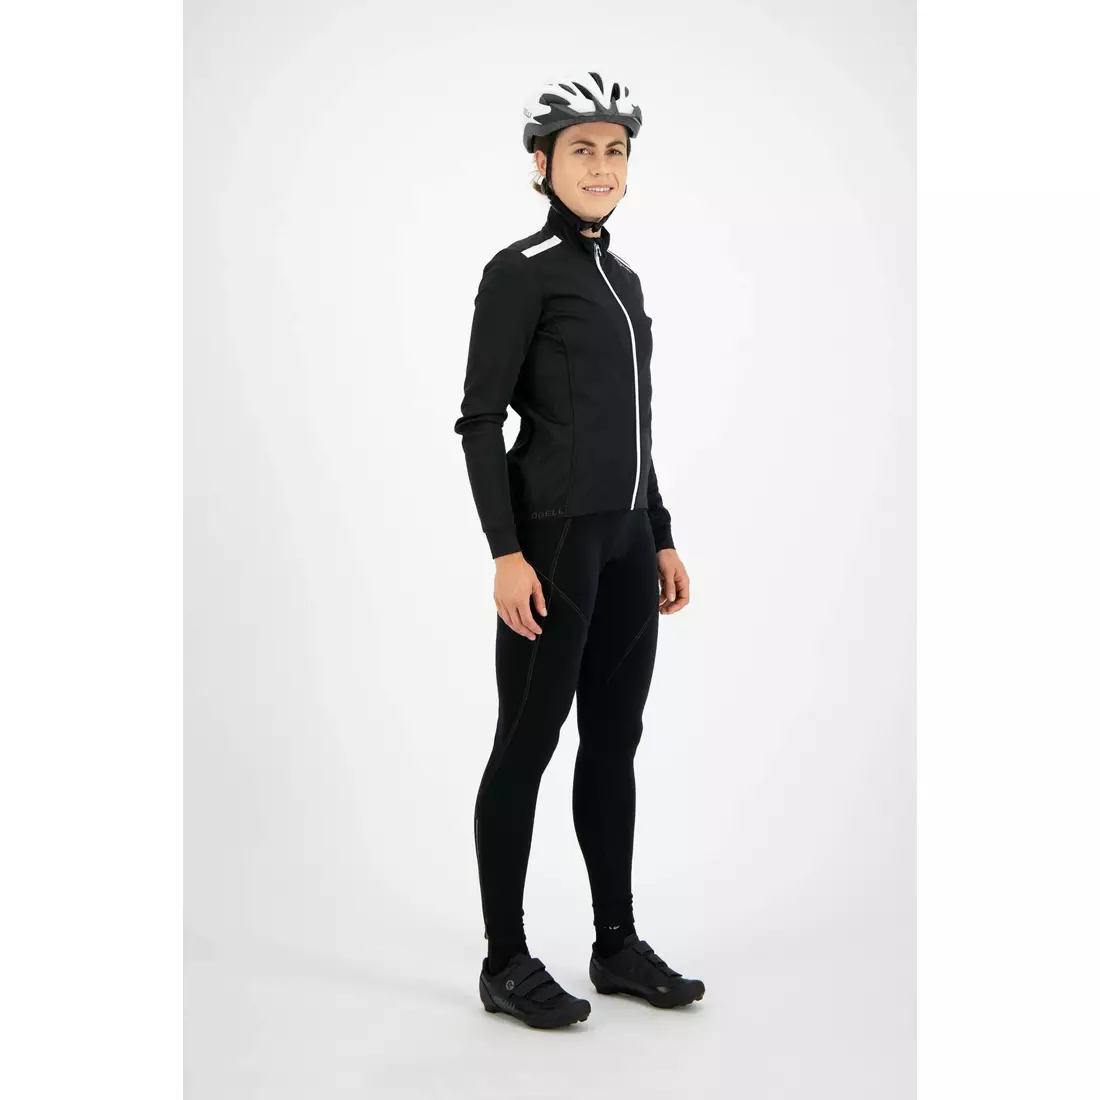 ROGELLI PESARA dnői téli kerékpáros kabát, fekete-fehér